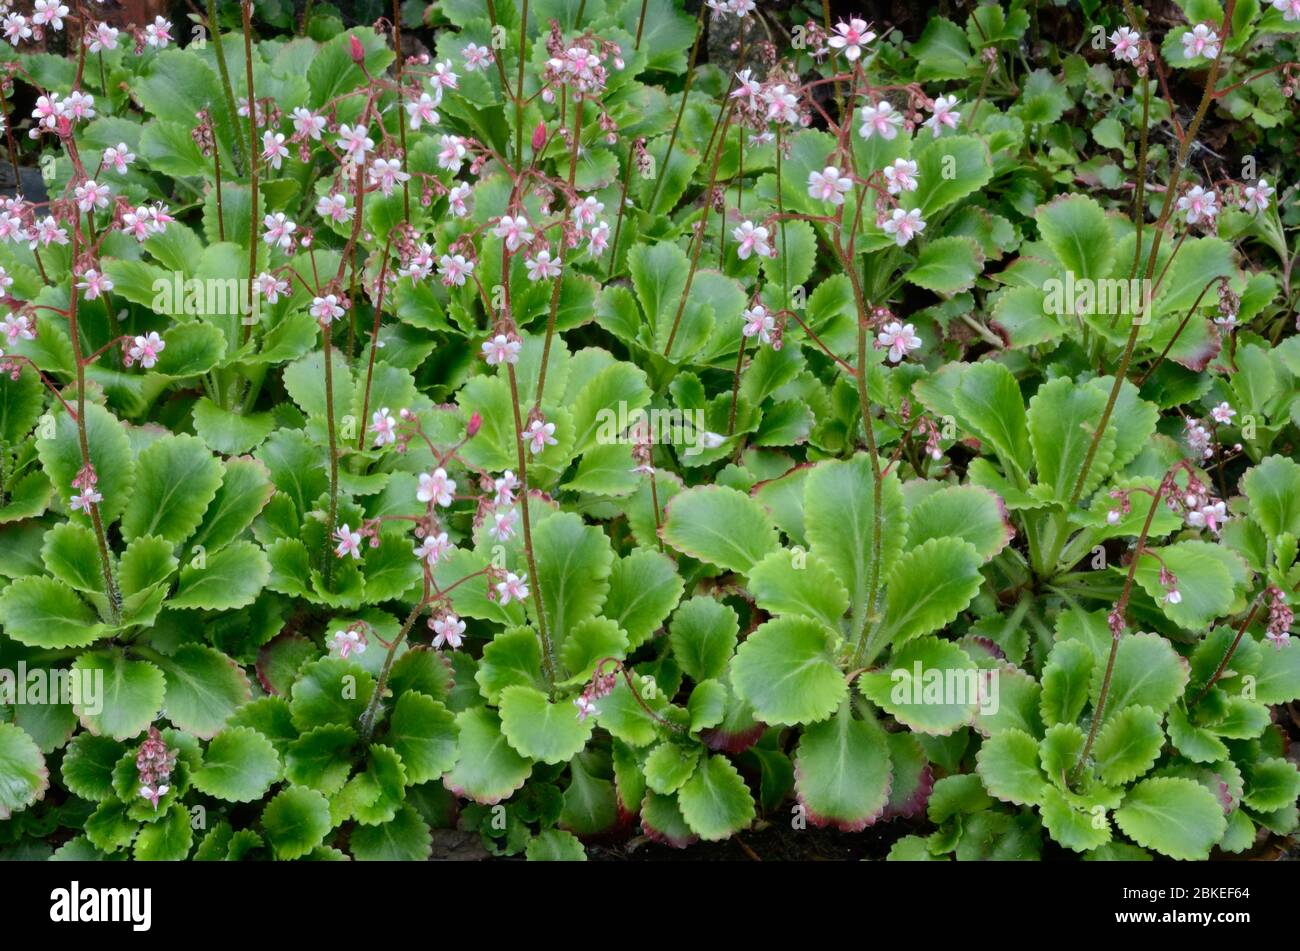 London Pride Blumen Blätter Pflanze Saxifraga urbirium mehrjährige Garten blühende Pflanze Stockfoto